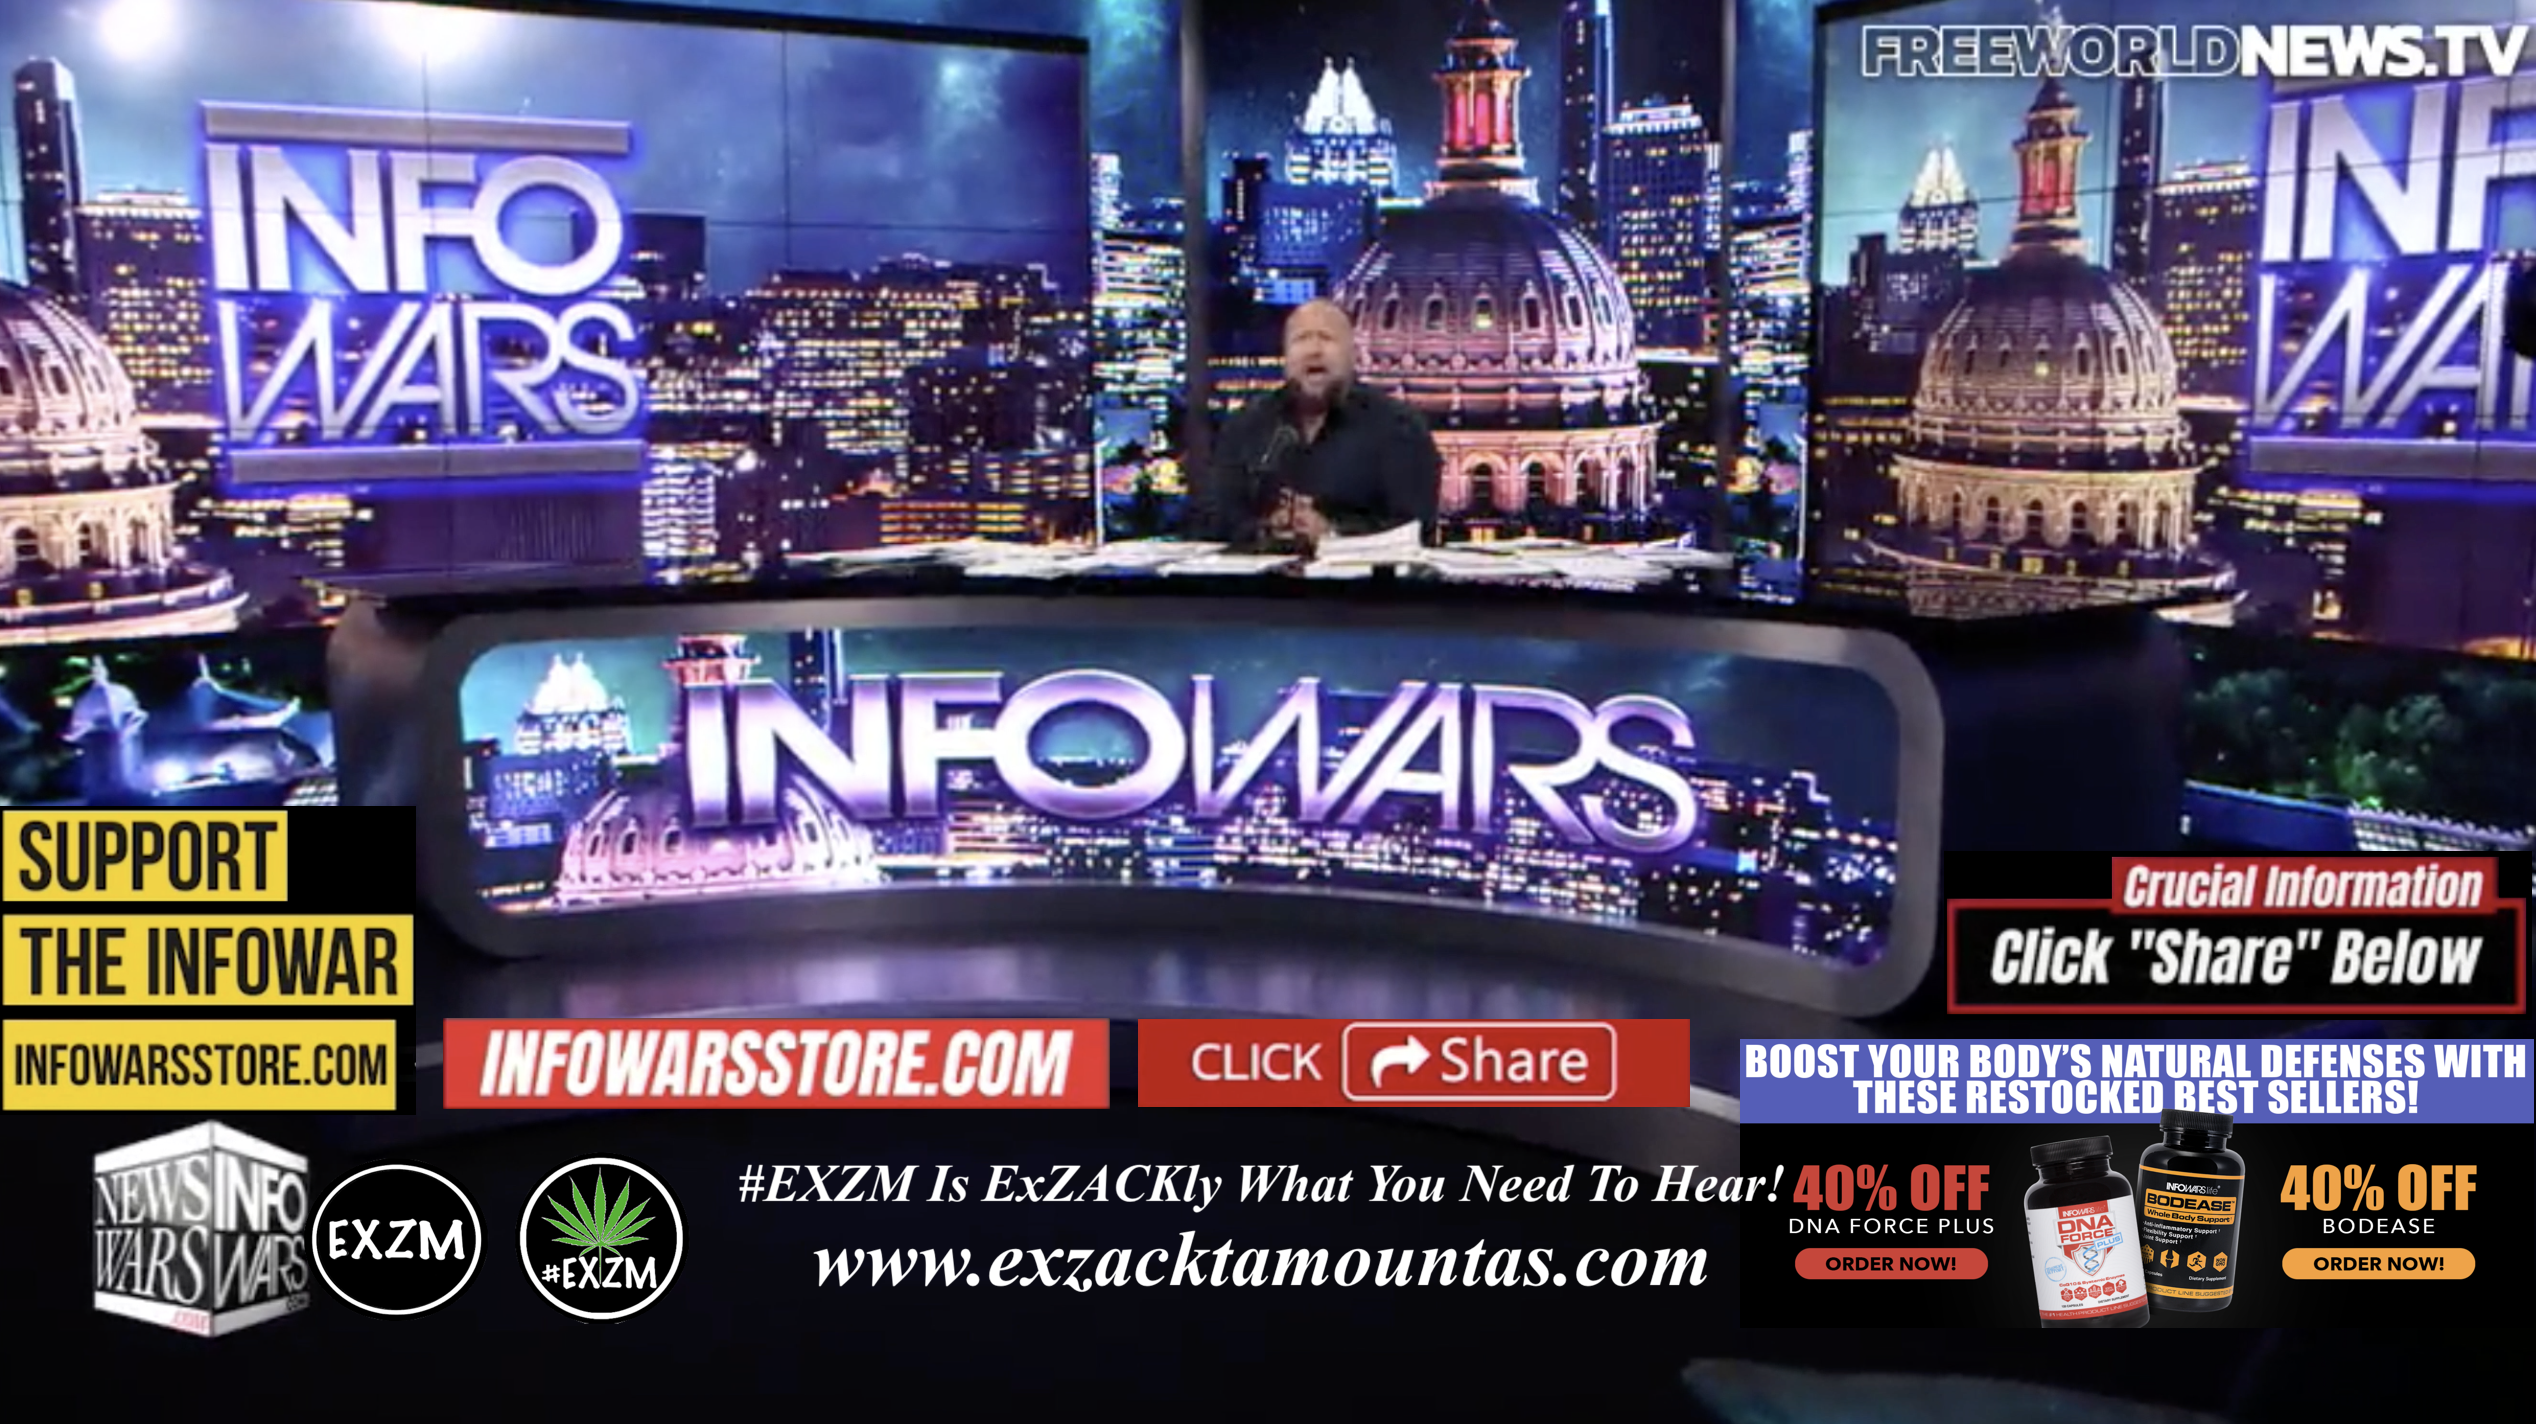 Alex Jones Live In Infowars Studio Free World News TV EXZM Zack Mount October 21st 2021 copy